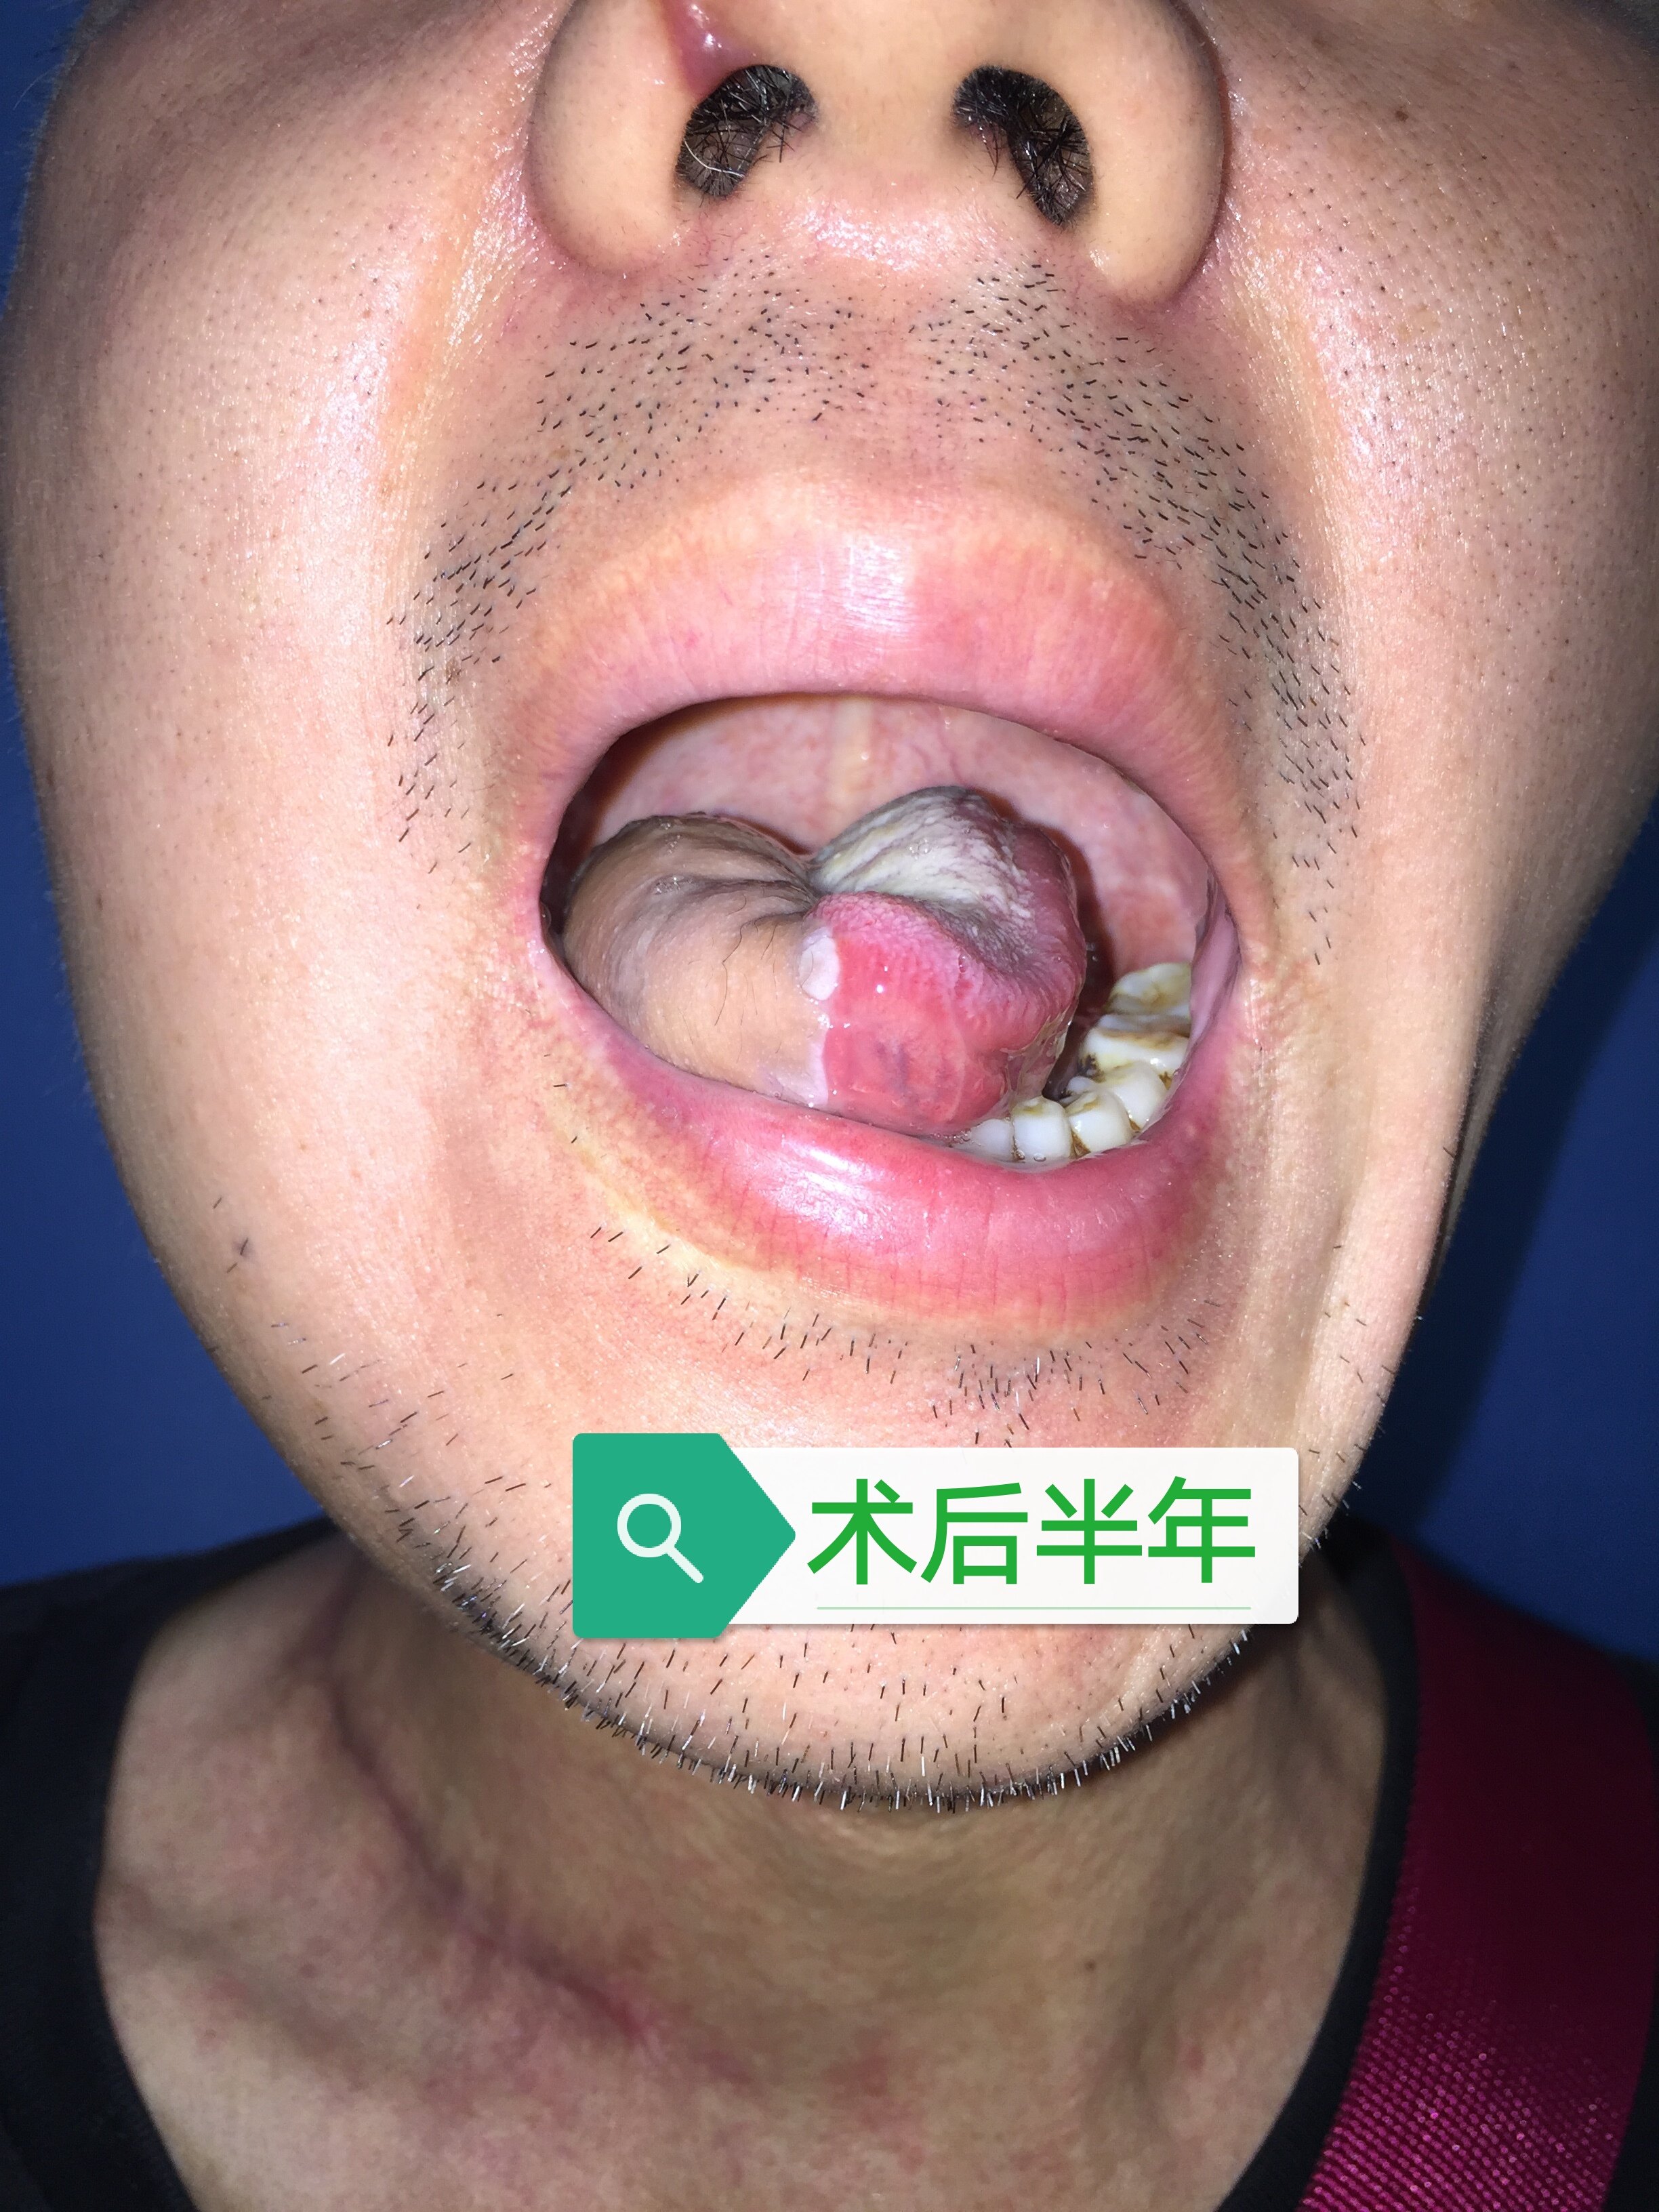 舌癌的手术治疗 附术前 术后照片 舌癌 病因 症状 检查 手术 日常护理 好大夫在线